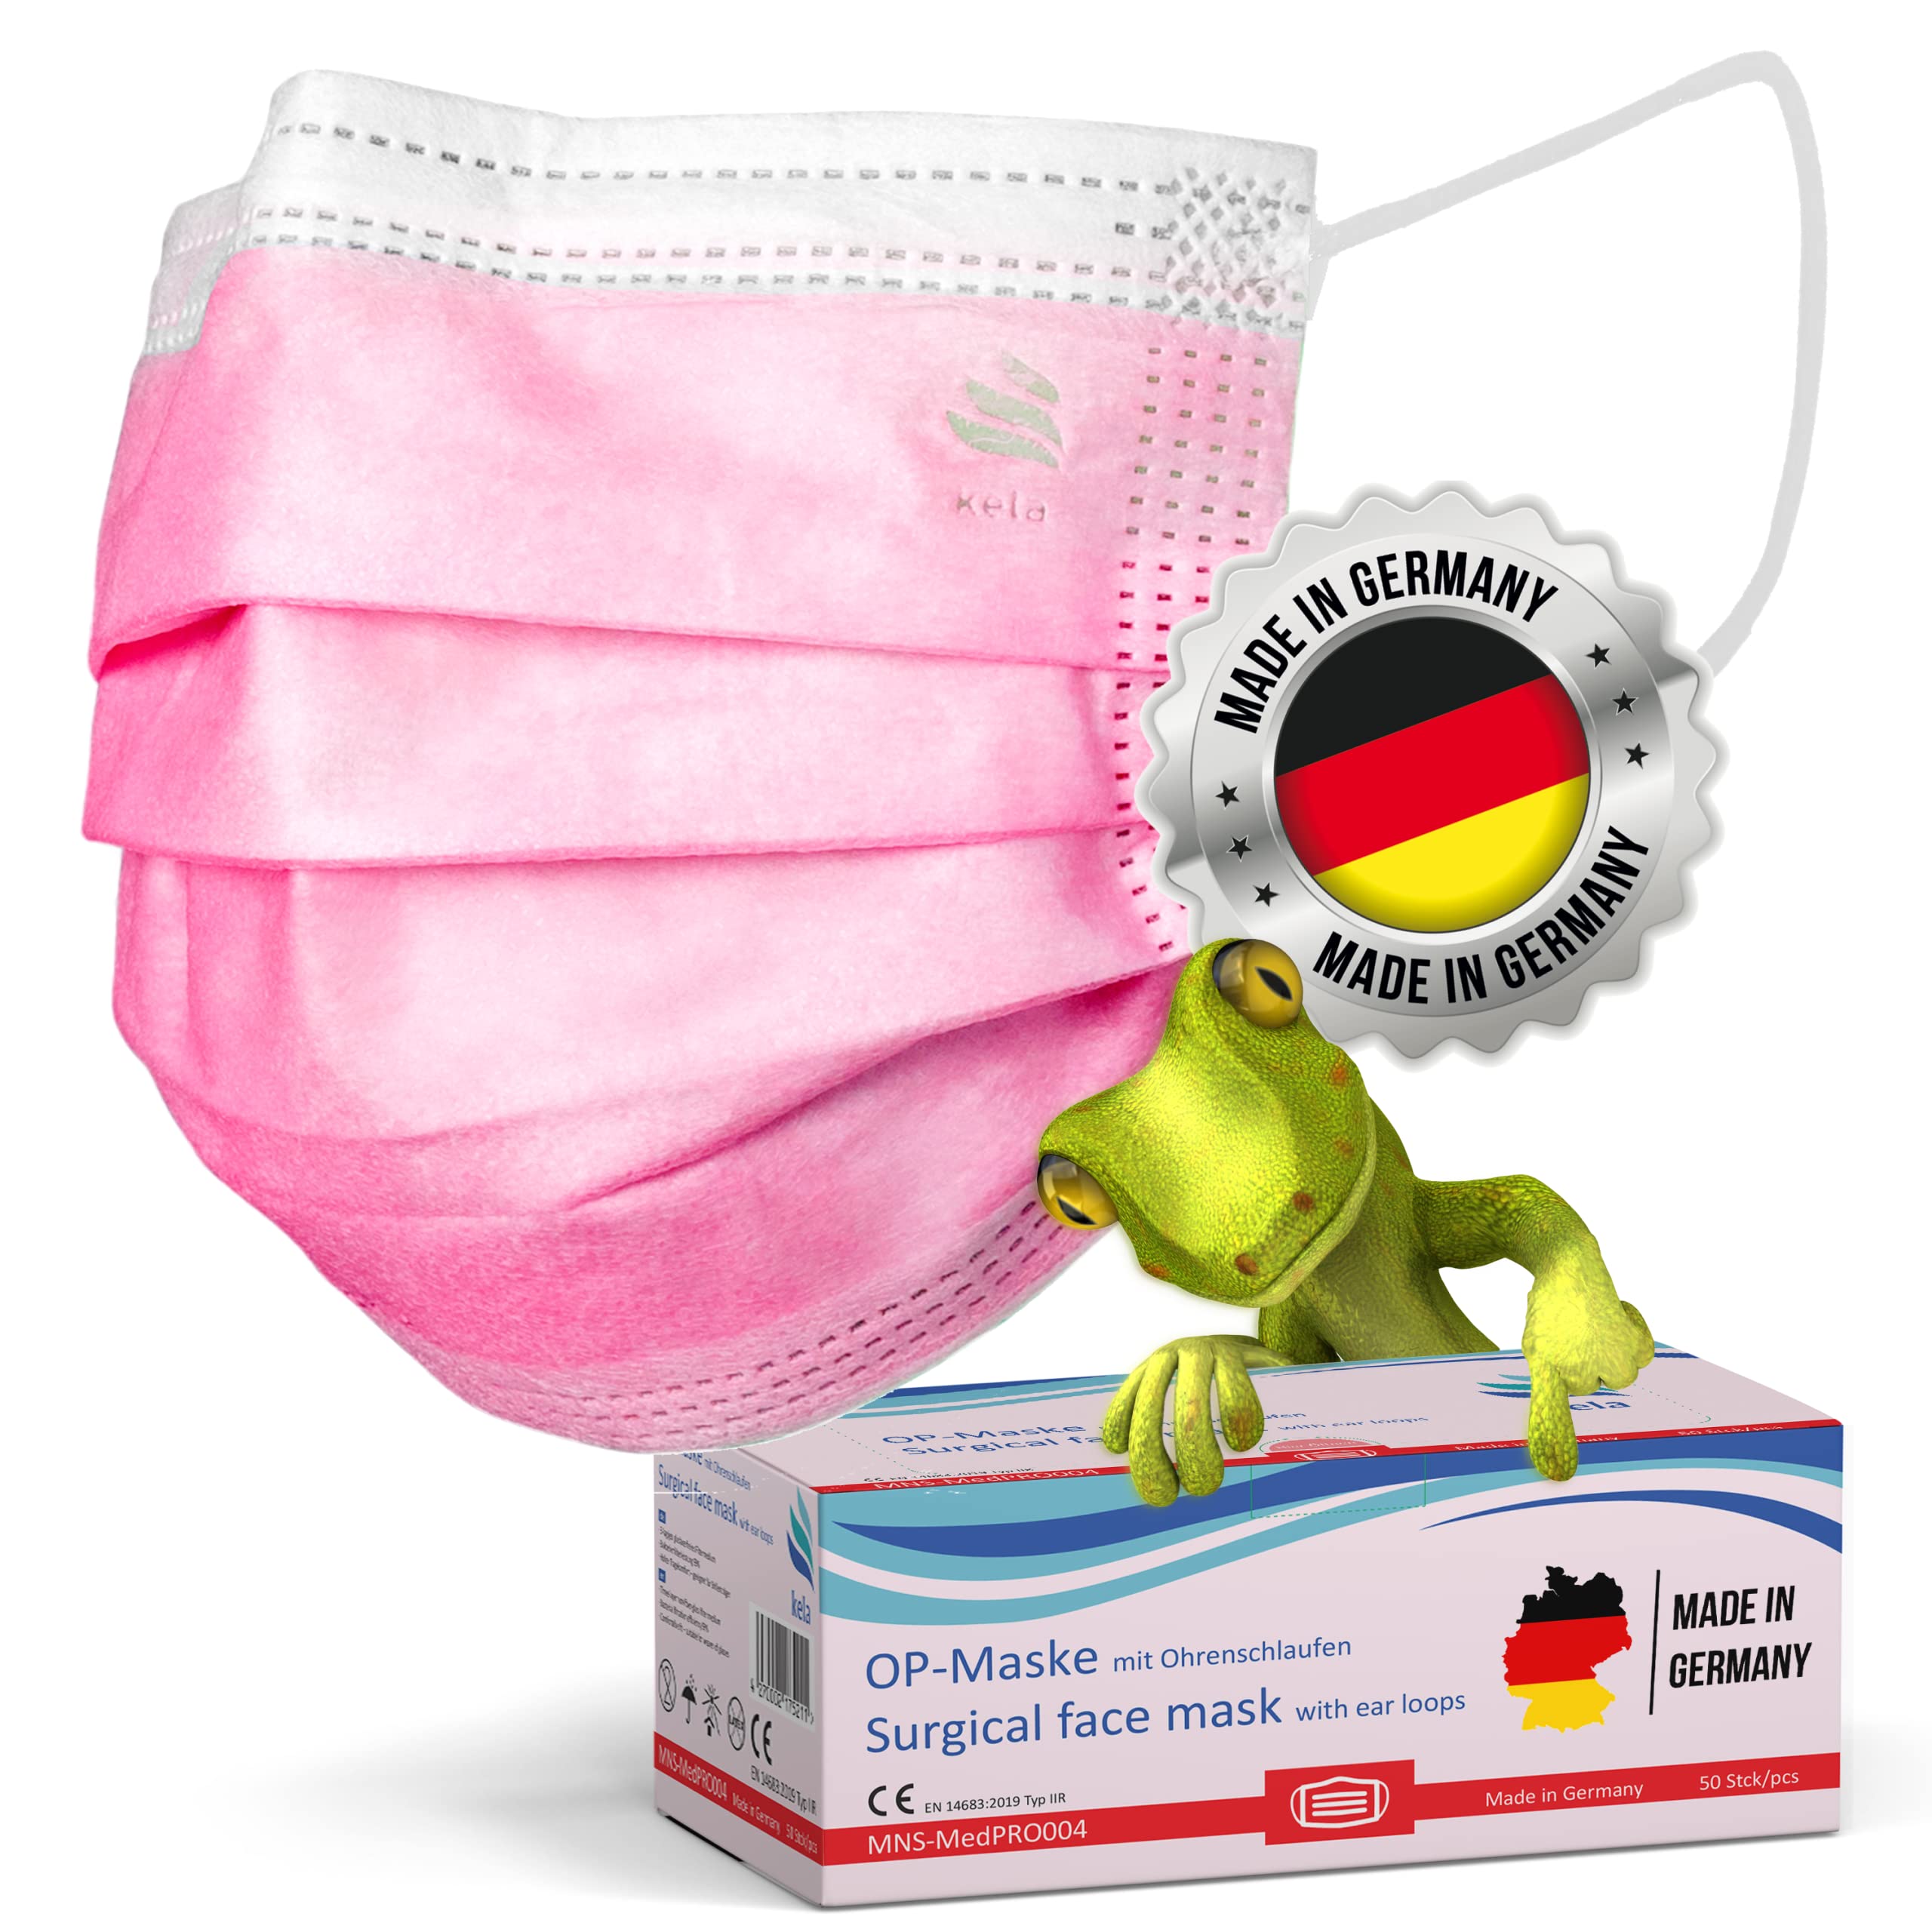 kela OP-Maske - 250x Medizinische Maske Pink/Rosa | 100% Made in Germany | OEKO-TEX Standard | Premium Atemschutz Mundschutz OP Maske | MNS Typ IIR Einwegmaske